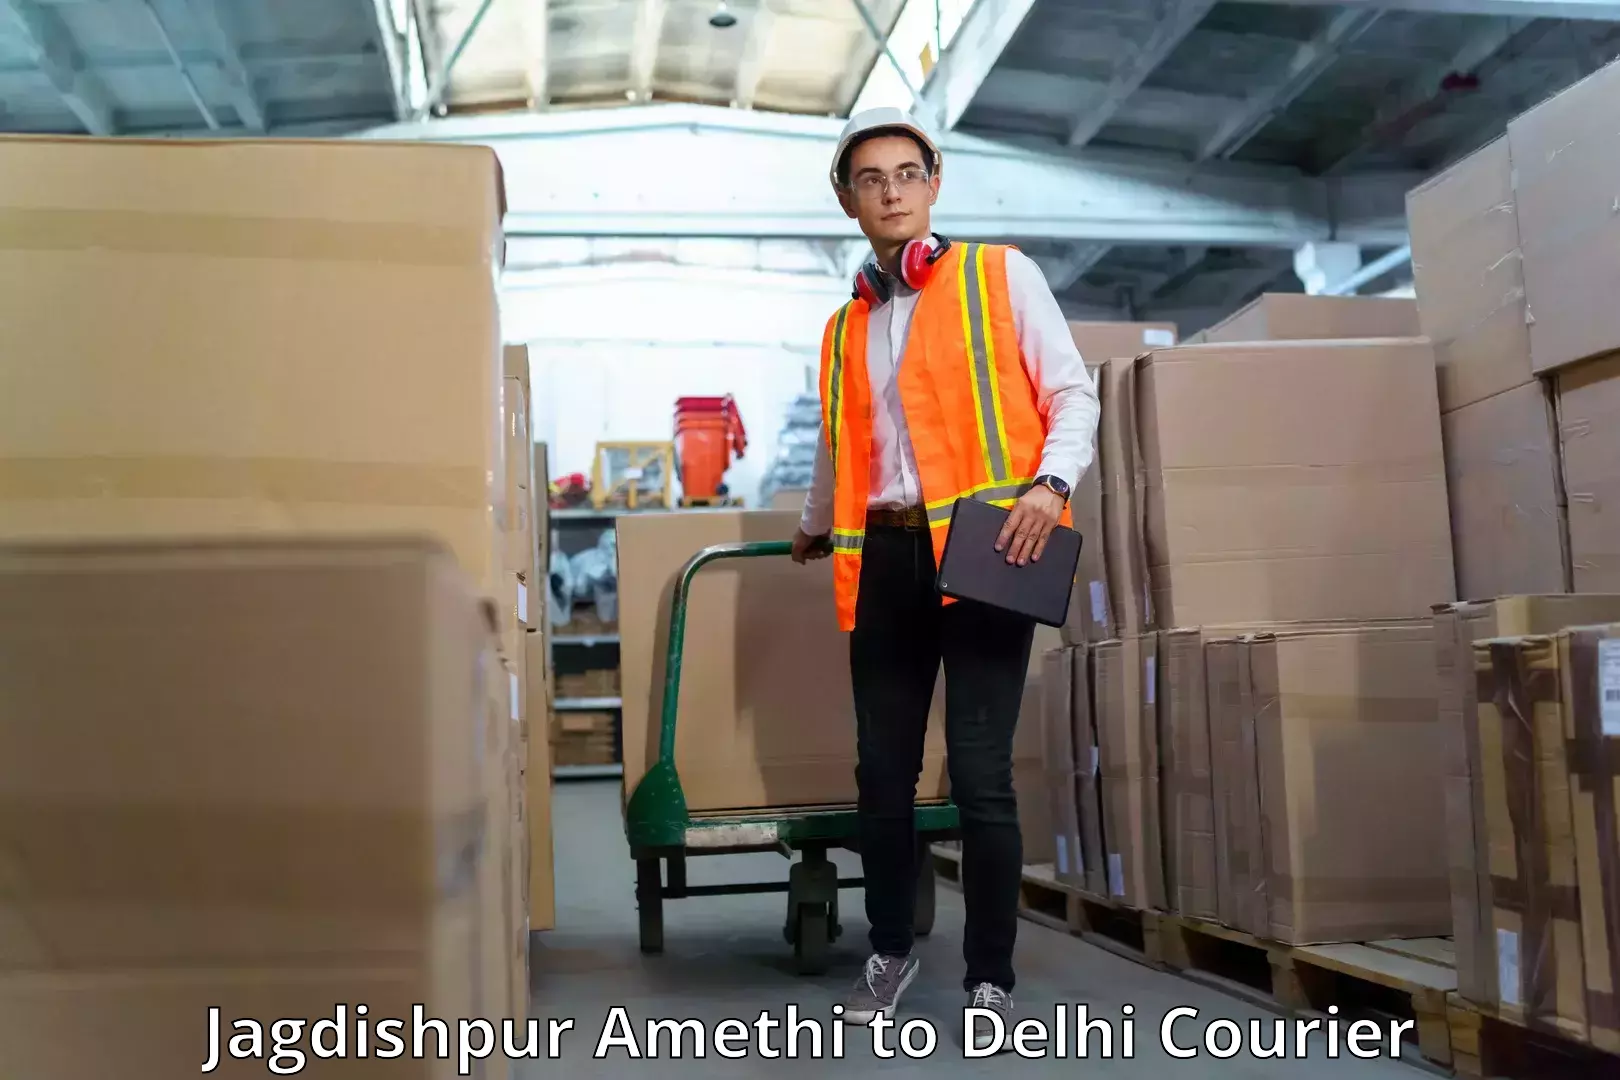 High-capacity parcel service Jagdishpur Amethi to Sansad Marg